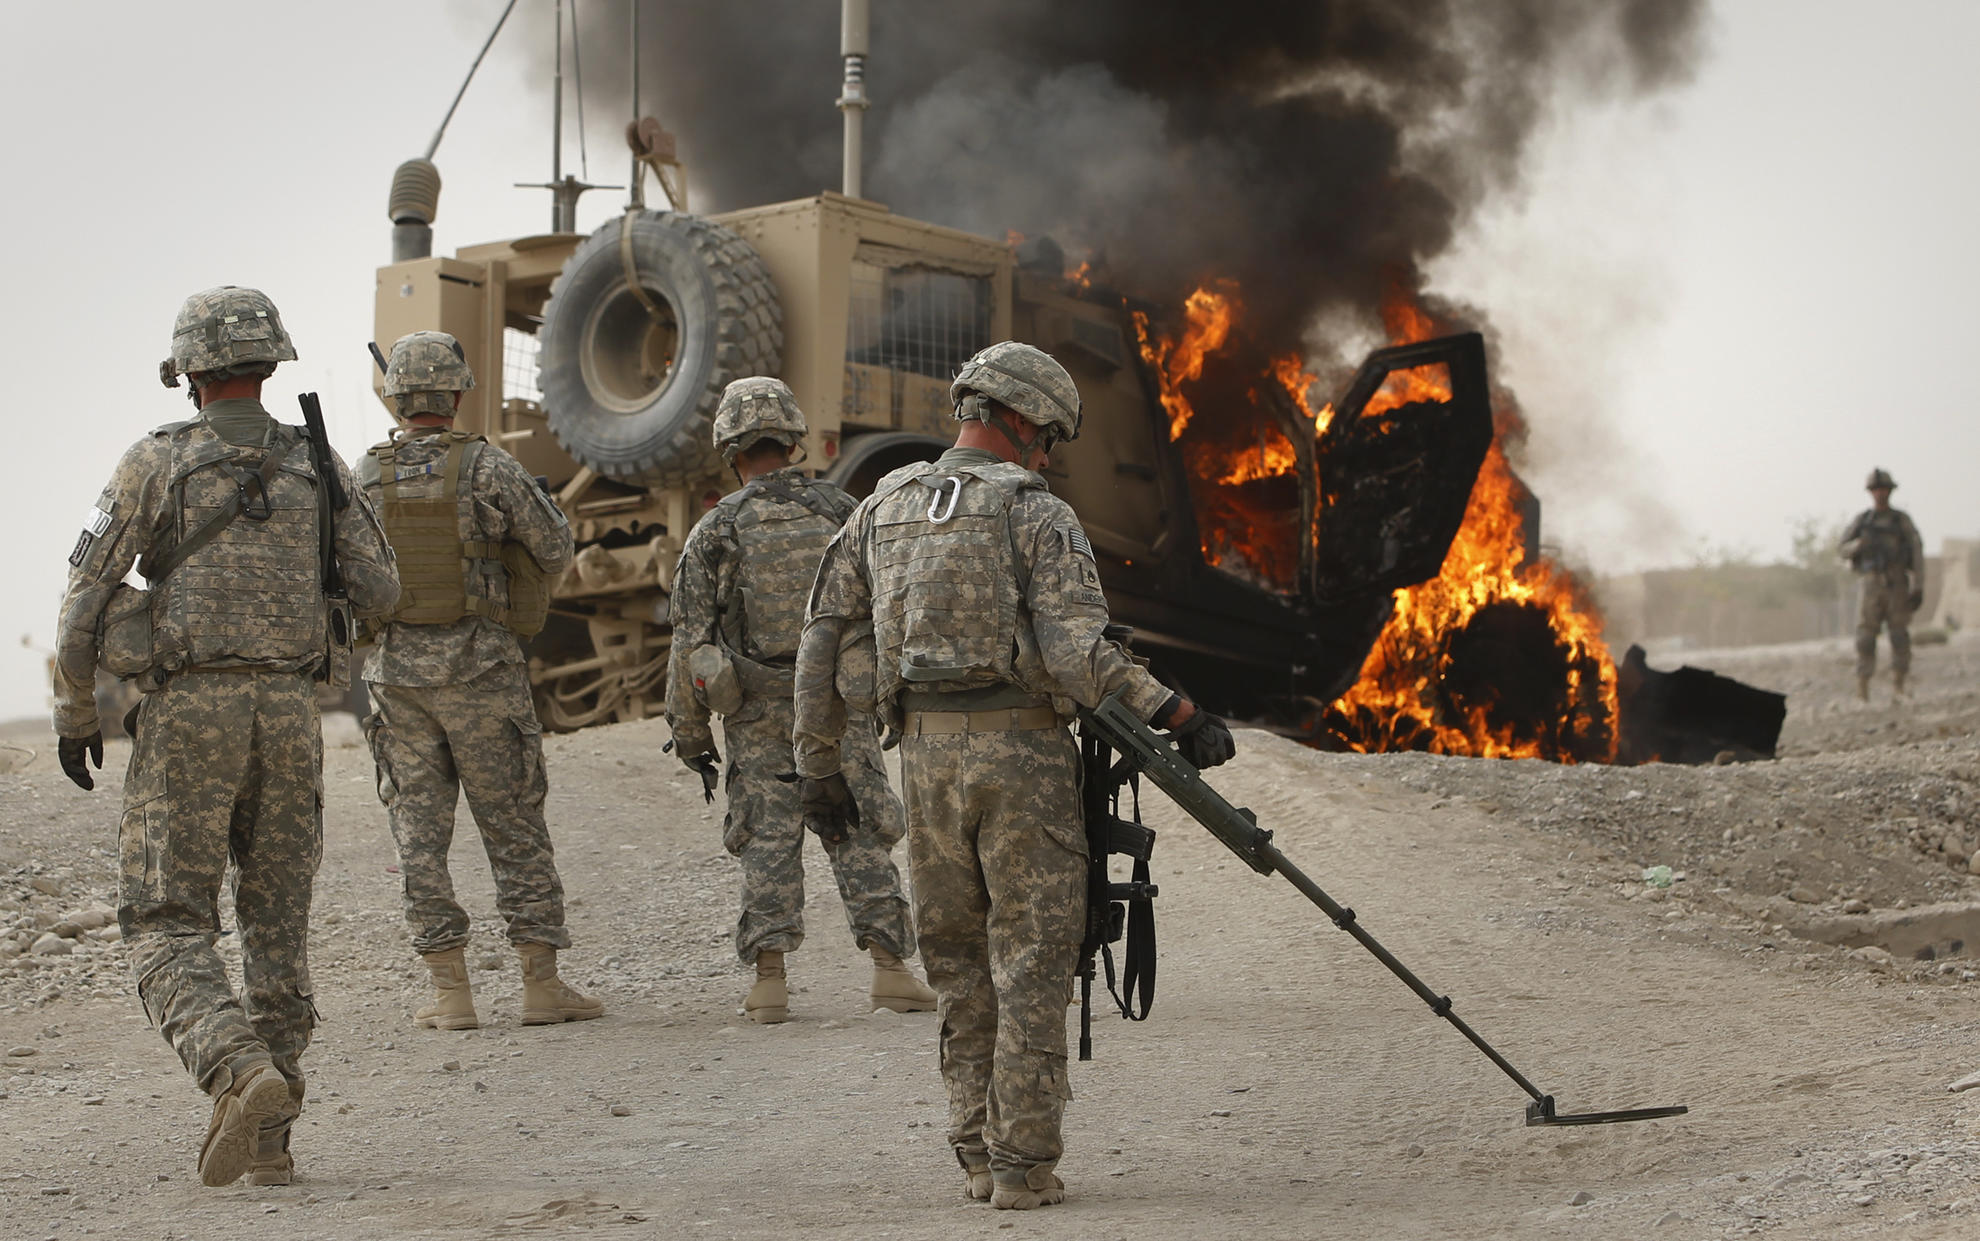 Они уходят: война в Афганистане обернулась катастрофой для США и НАТО